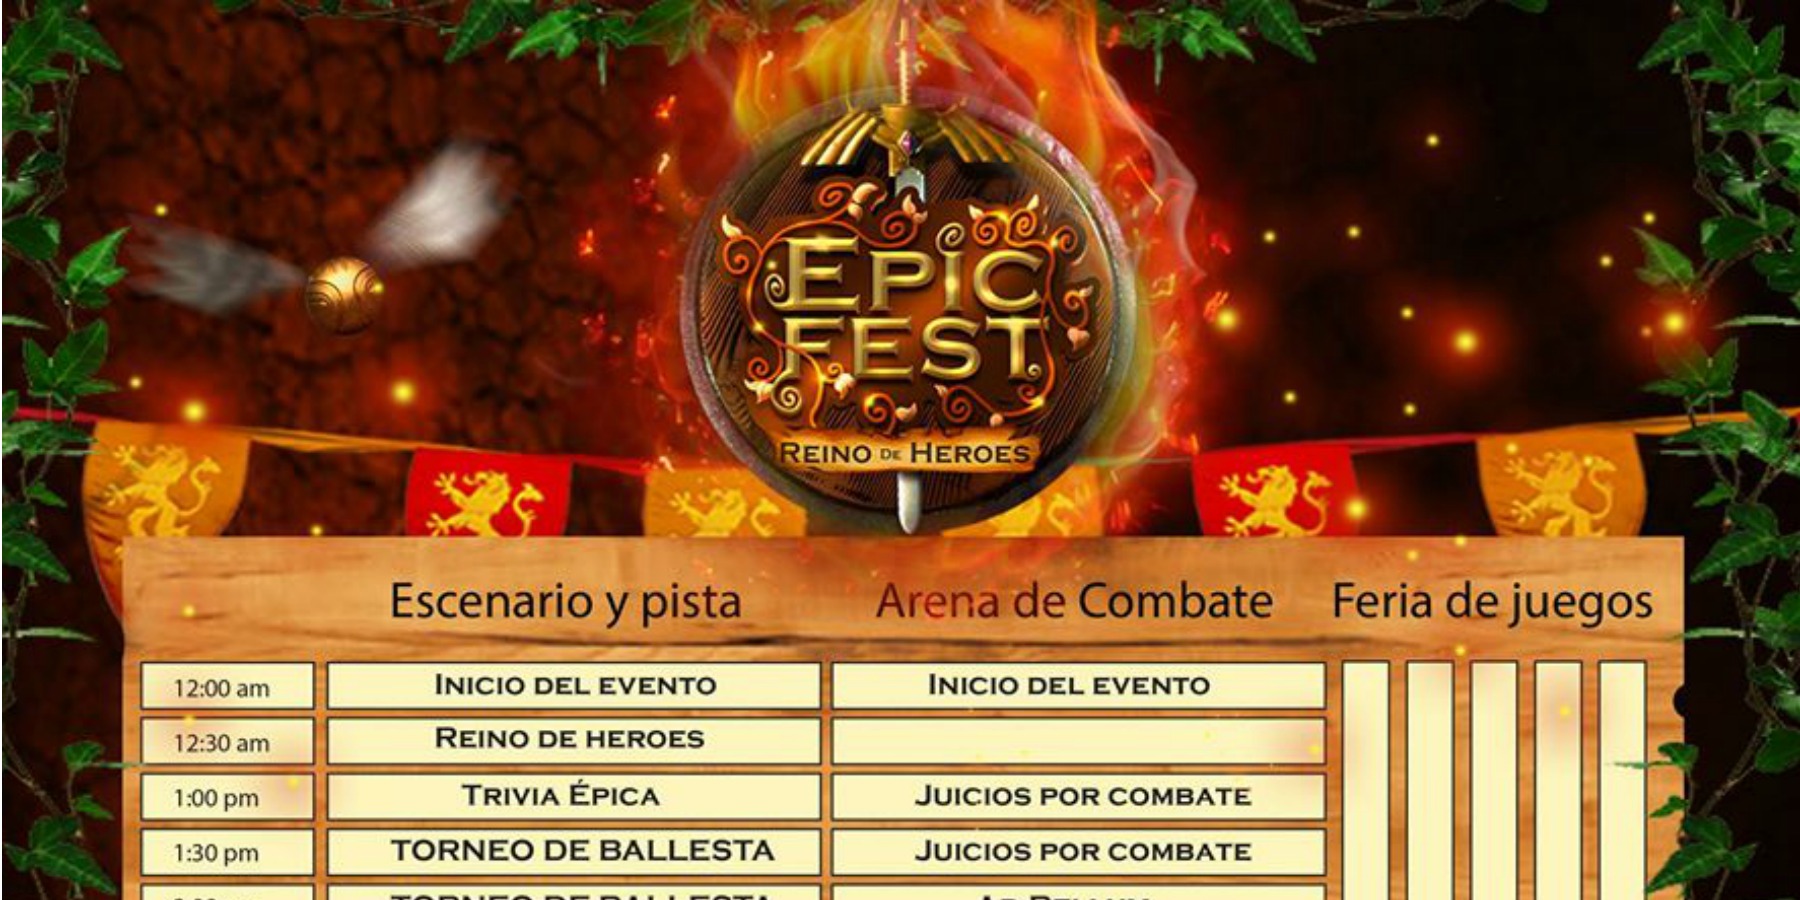 Epic Fest 2016